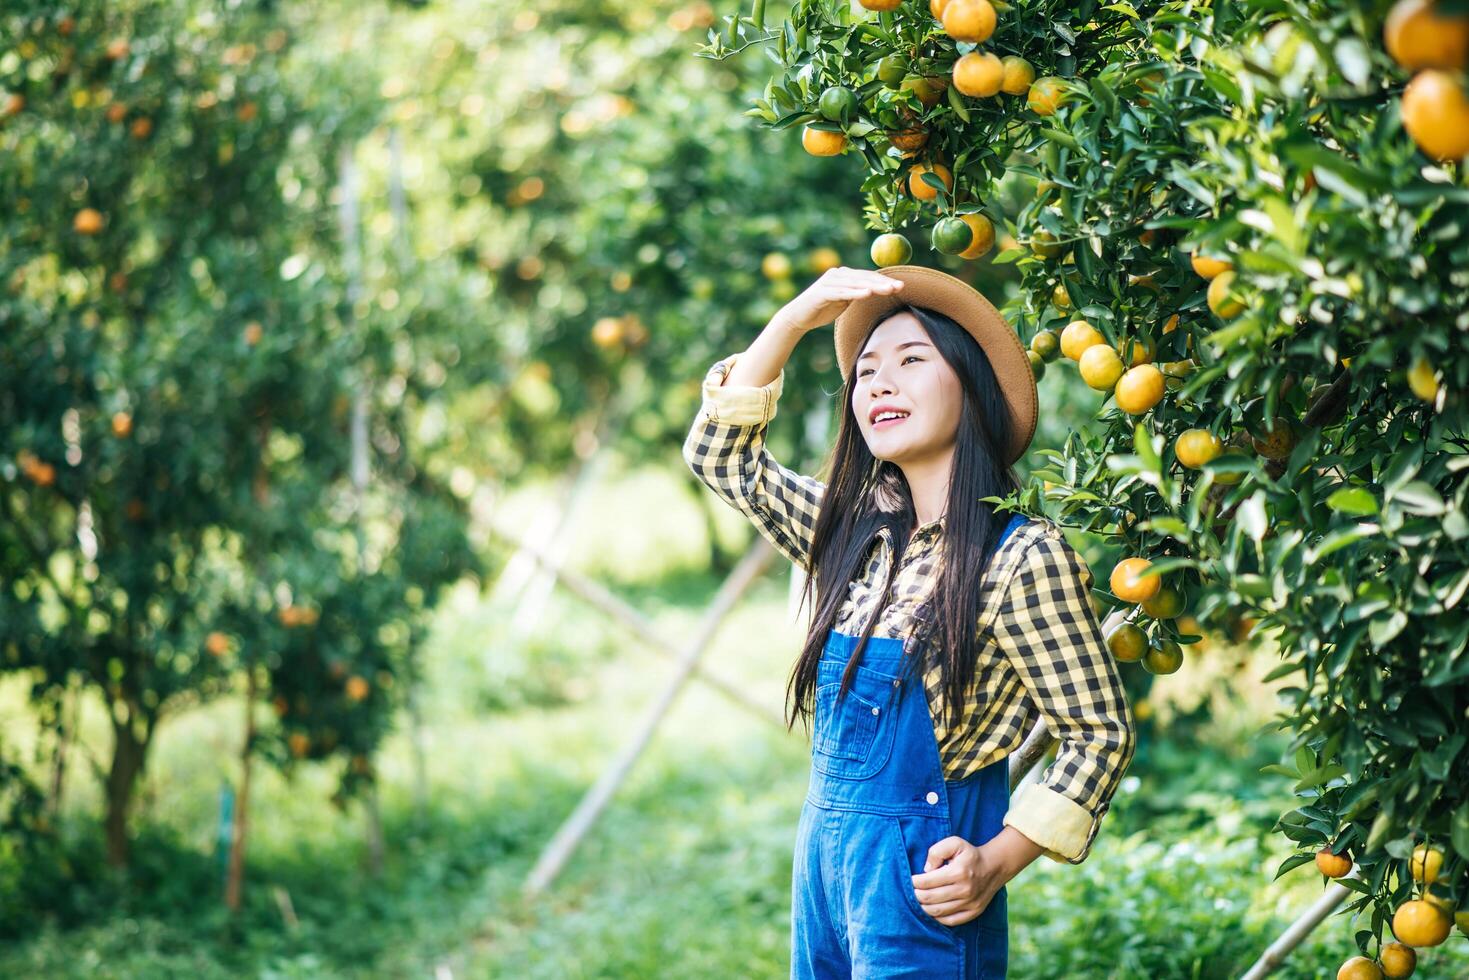 Frau, die eine Orangenplantage erntet foto